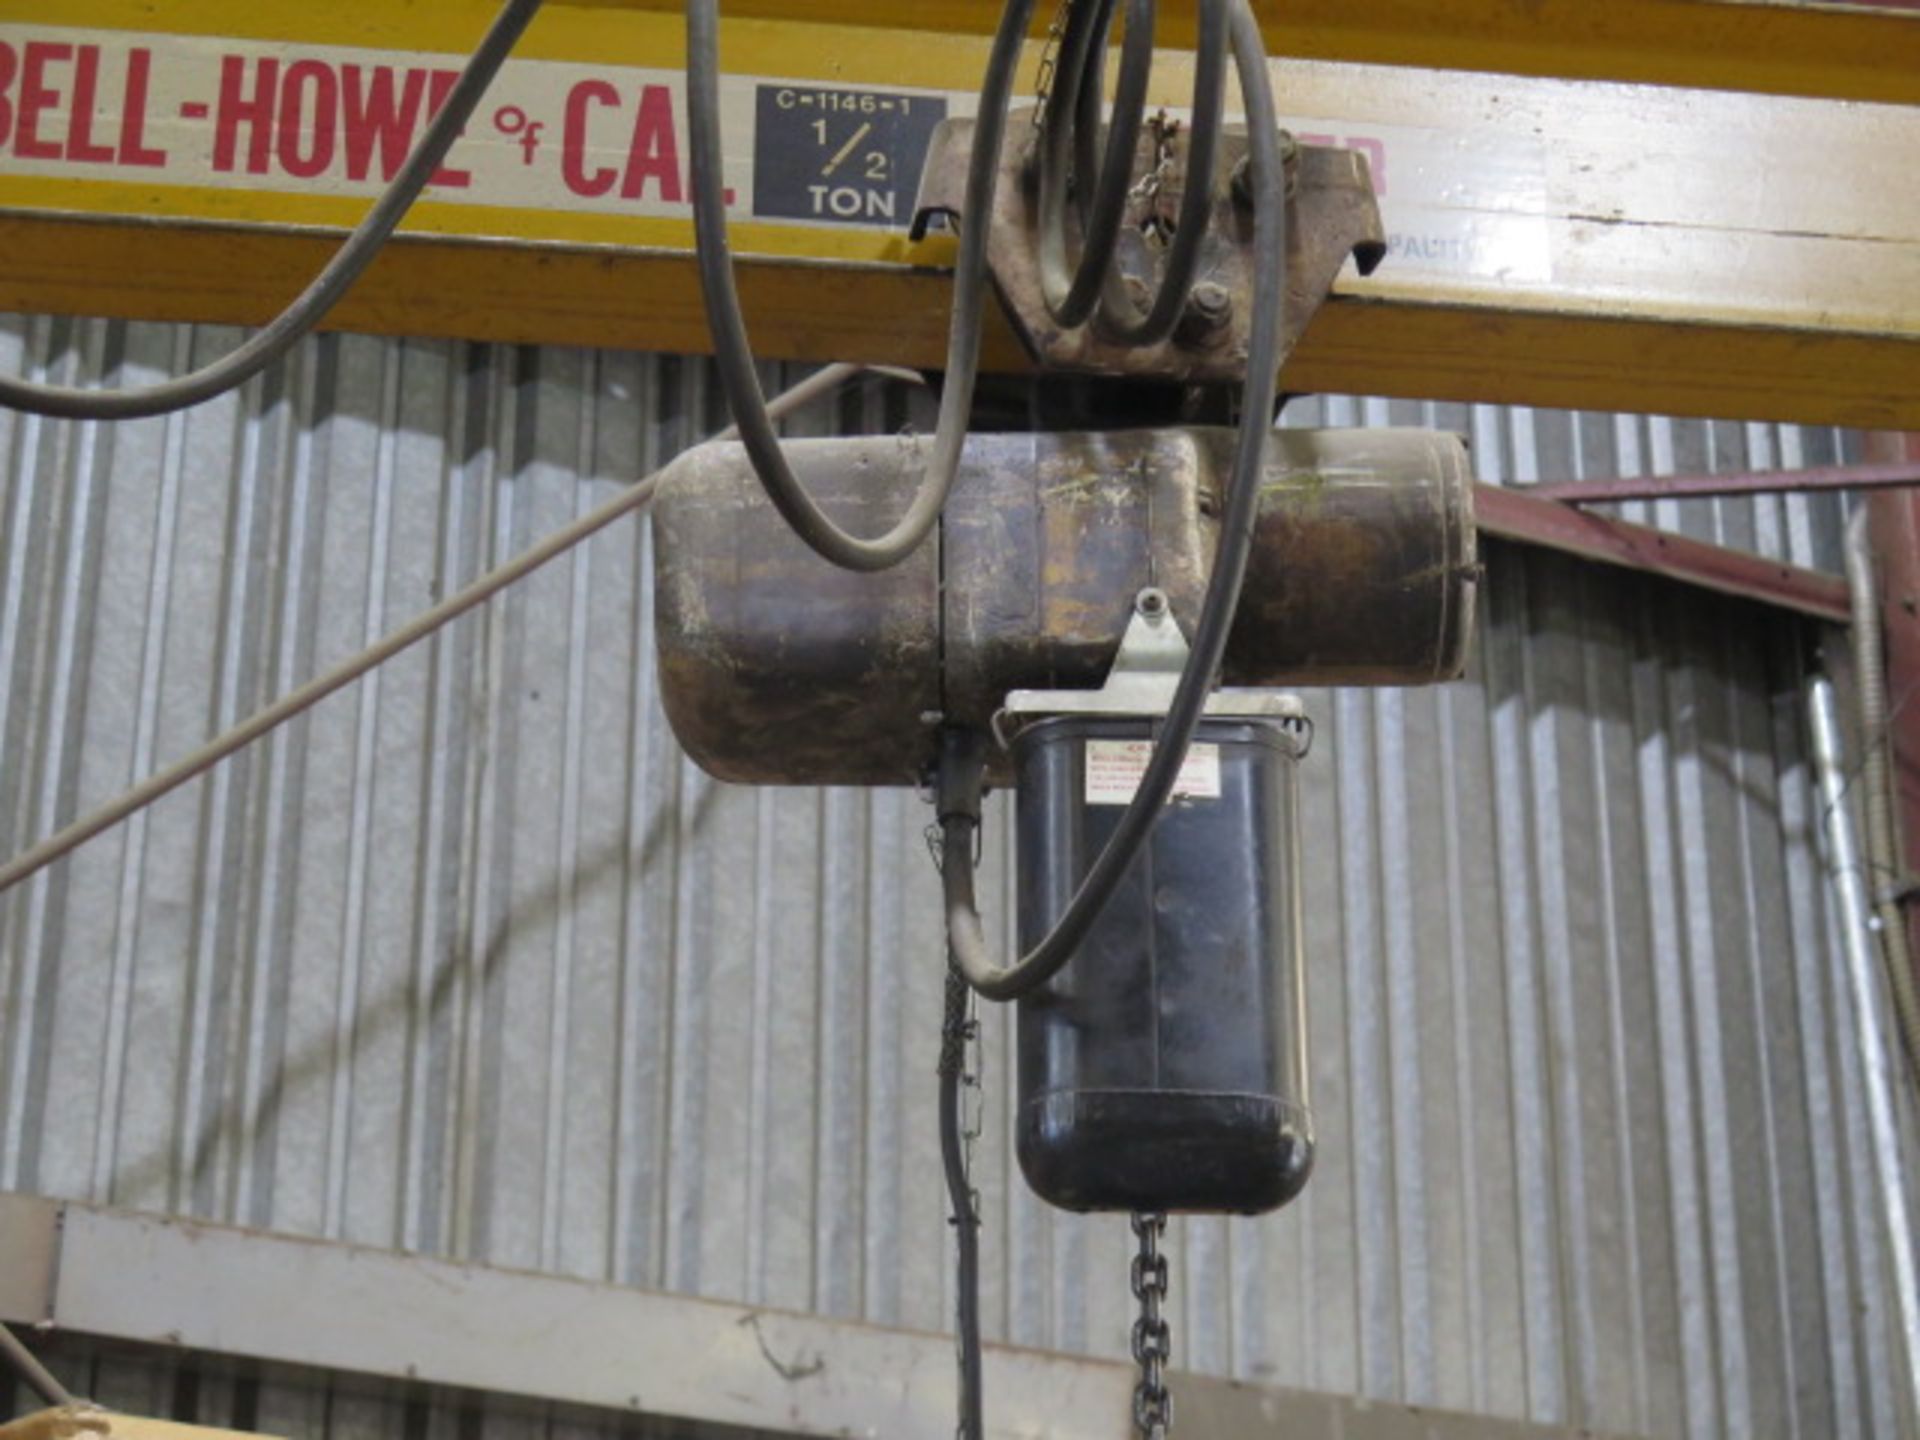 Abell-Howe 1/2 Ton Floor Mounted Jib Crane w/ Electric Hoist (SOLD AS-IS - NO WARRANTY) - Bild 4 aus 7